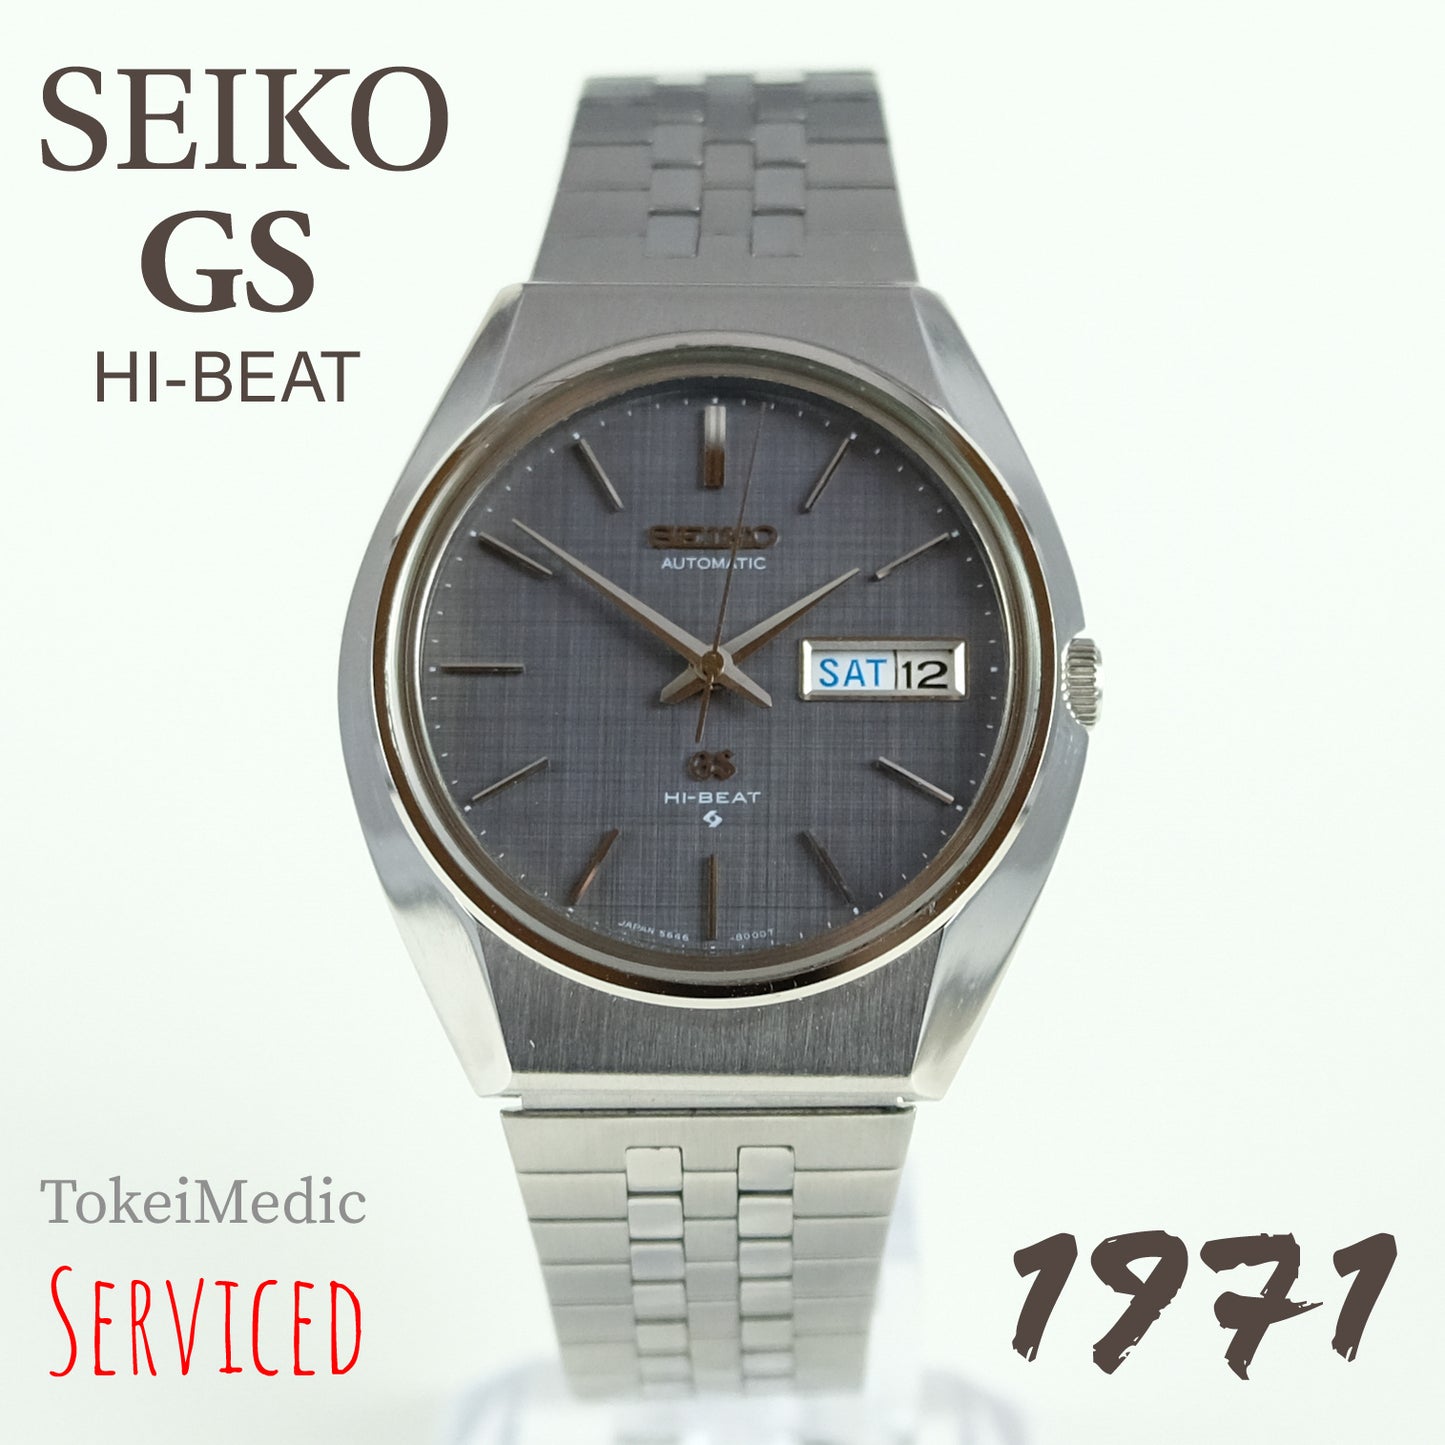 1971 Seiko GS Hi-Beat 5646-8000